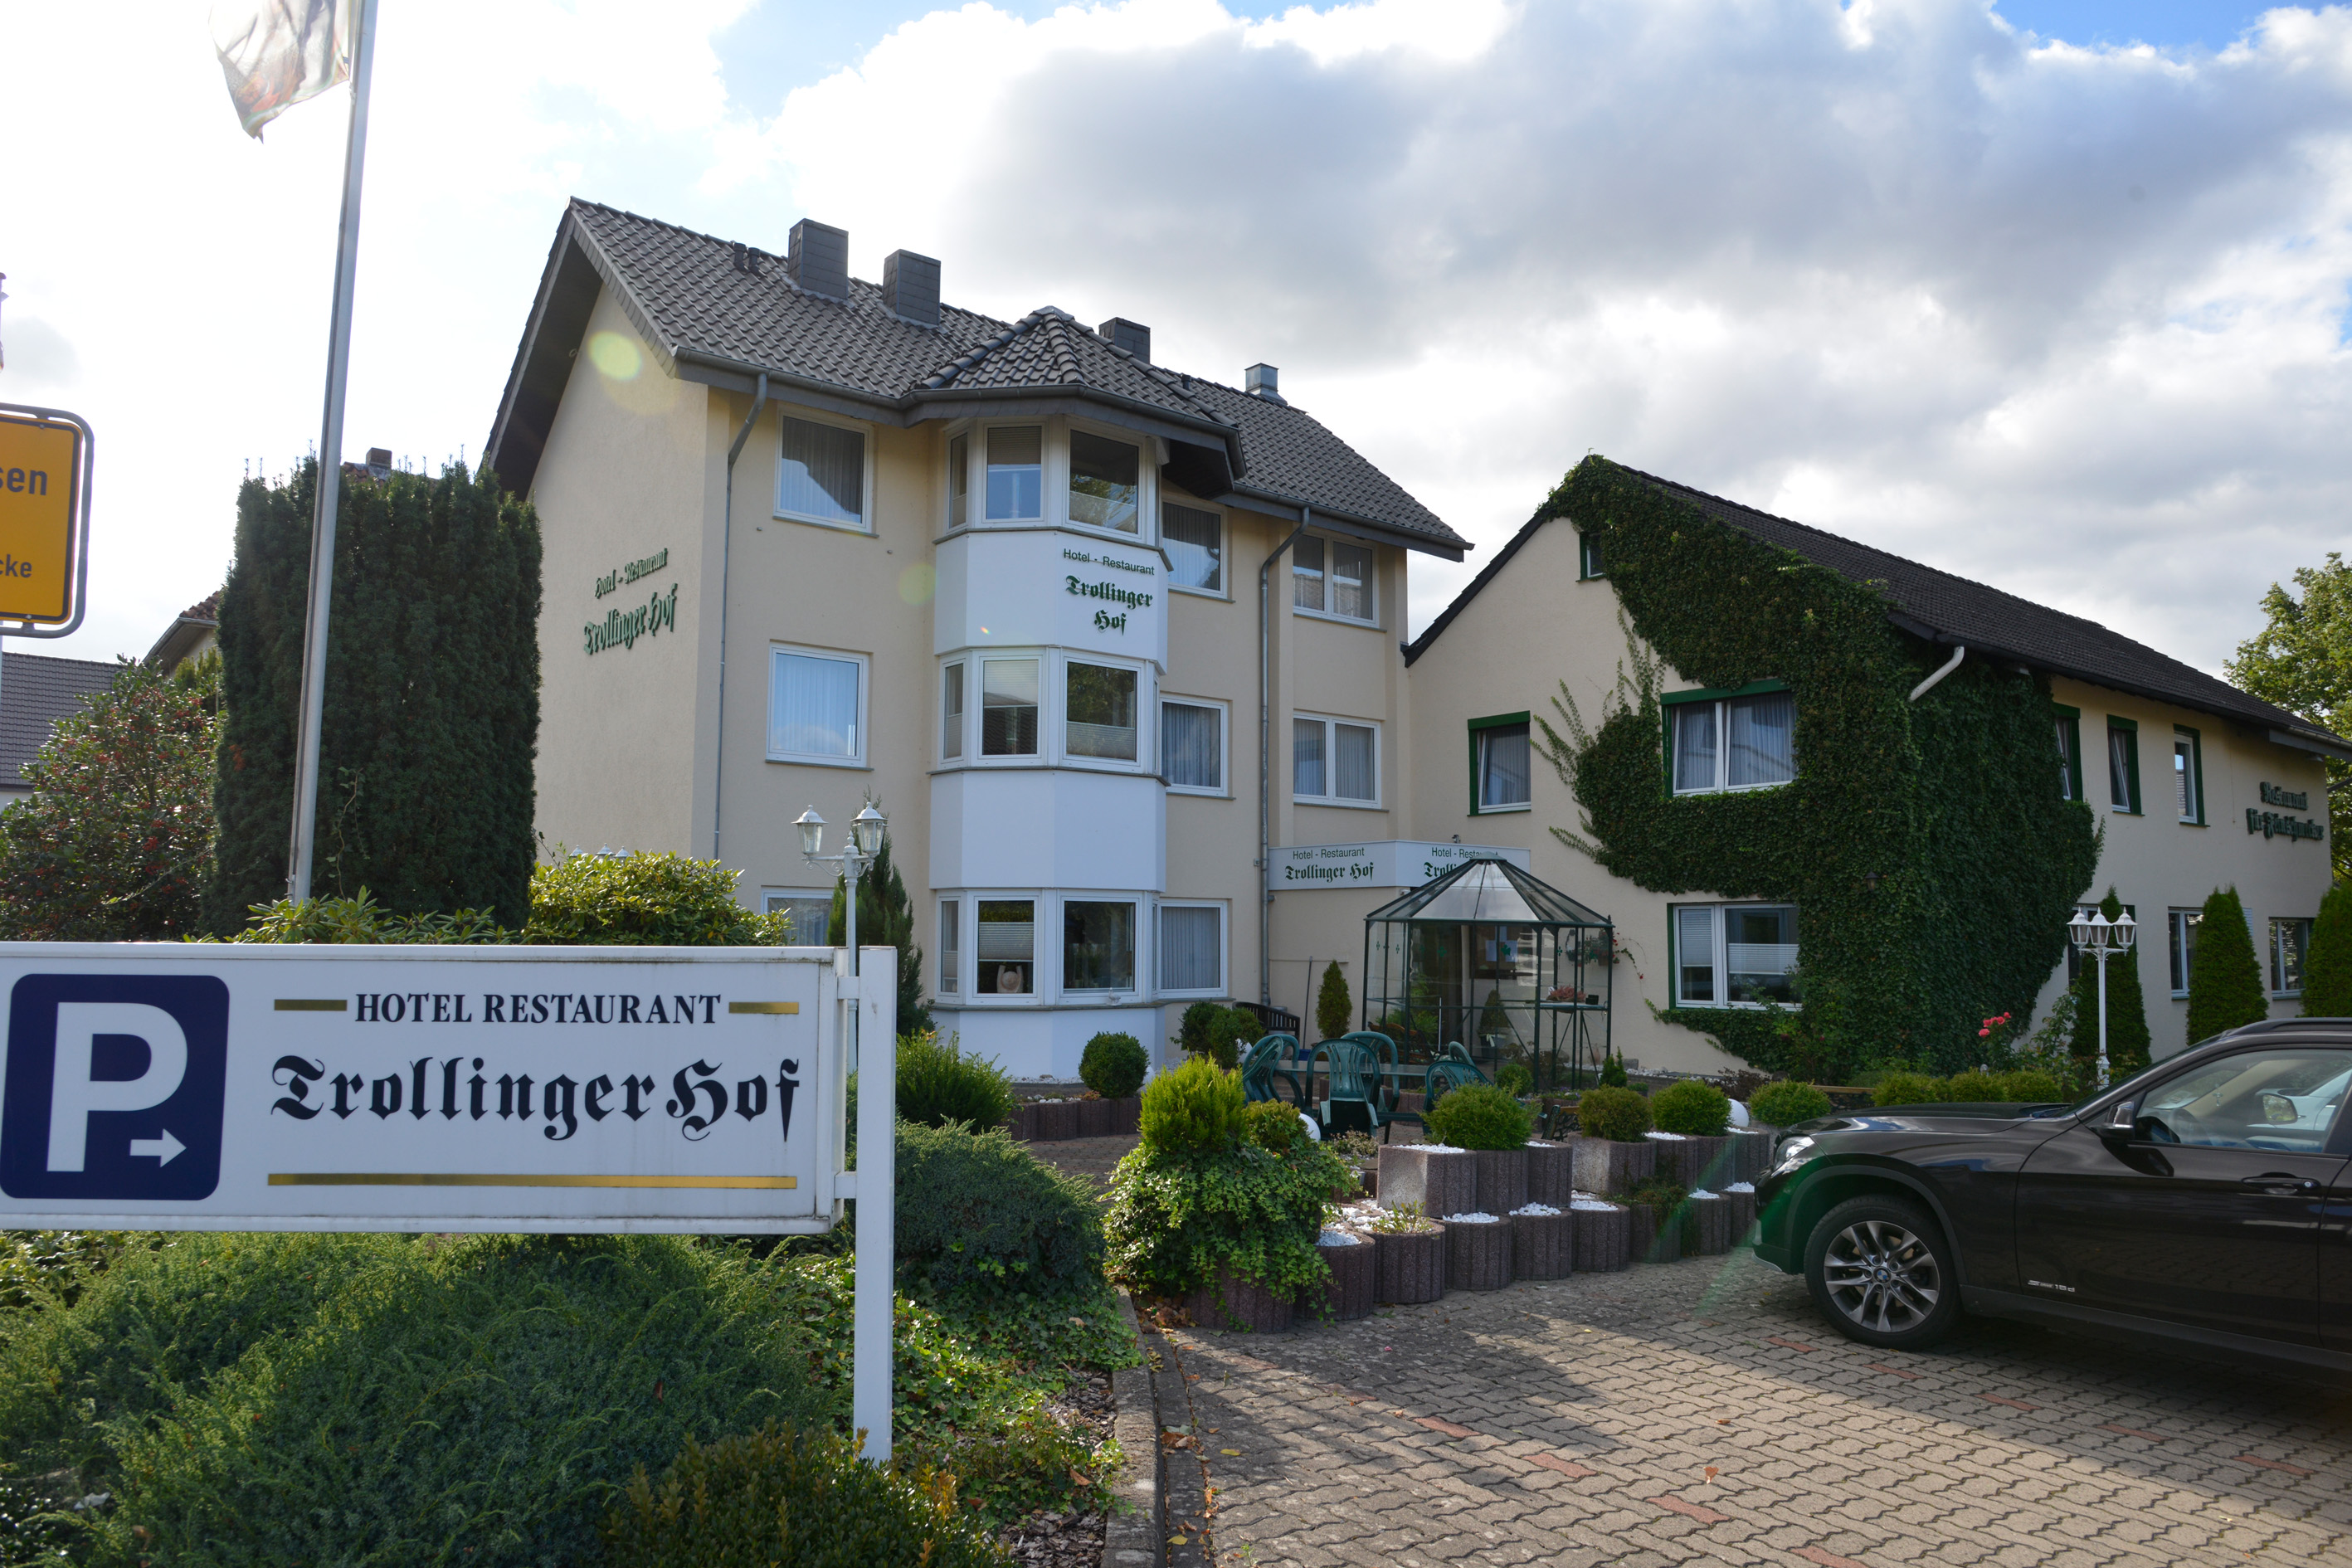 Unser Trollinger Hof ist Ihr Hotel mit Herz in Bad Oeynhausen - nahe dem He...